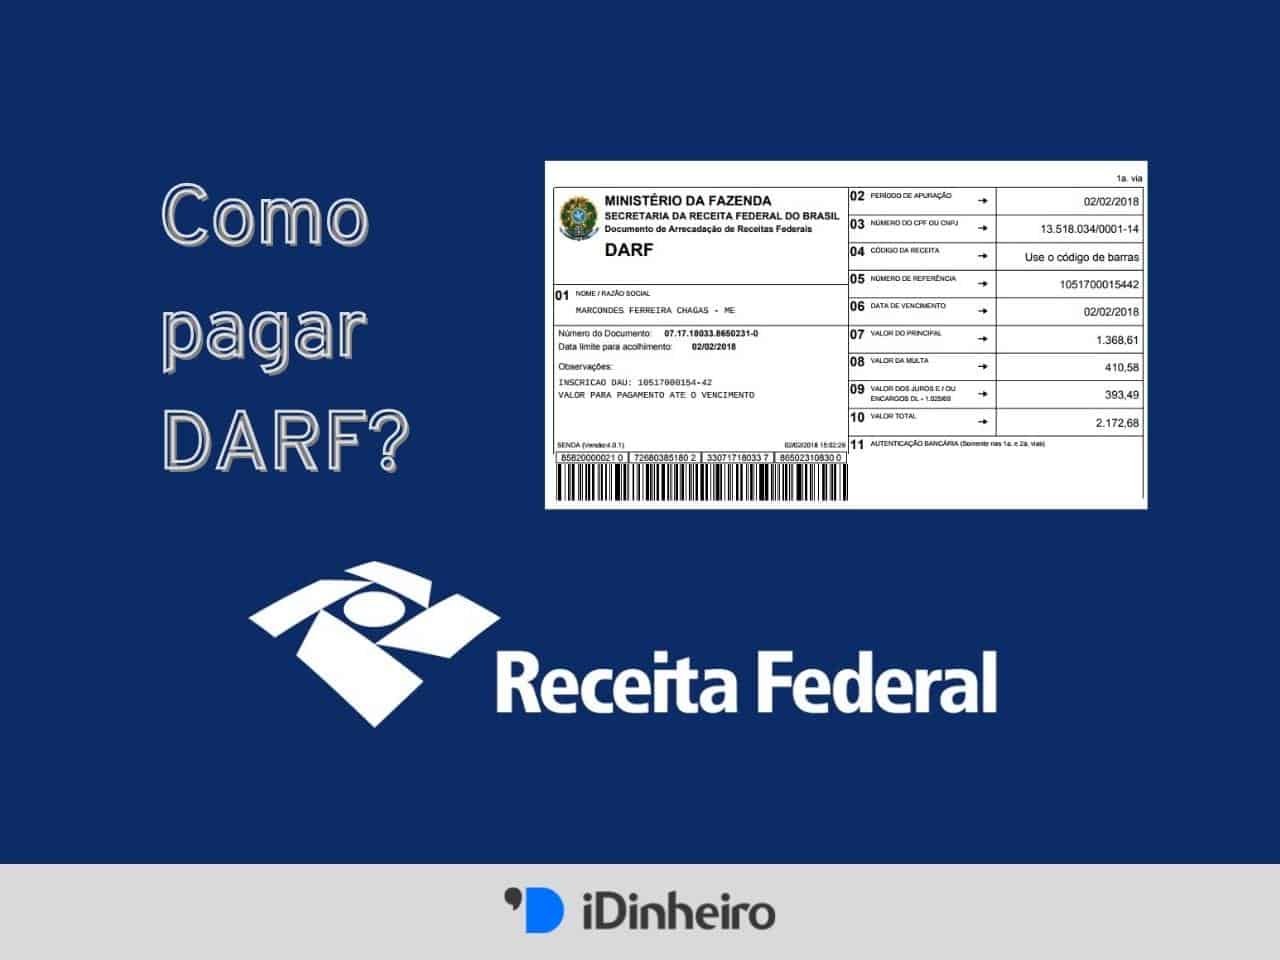 ACIG informa que Receita Federal simplificou o parcelamento de dívidas -  Garça Online - Seu portal de notícias